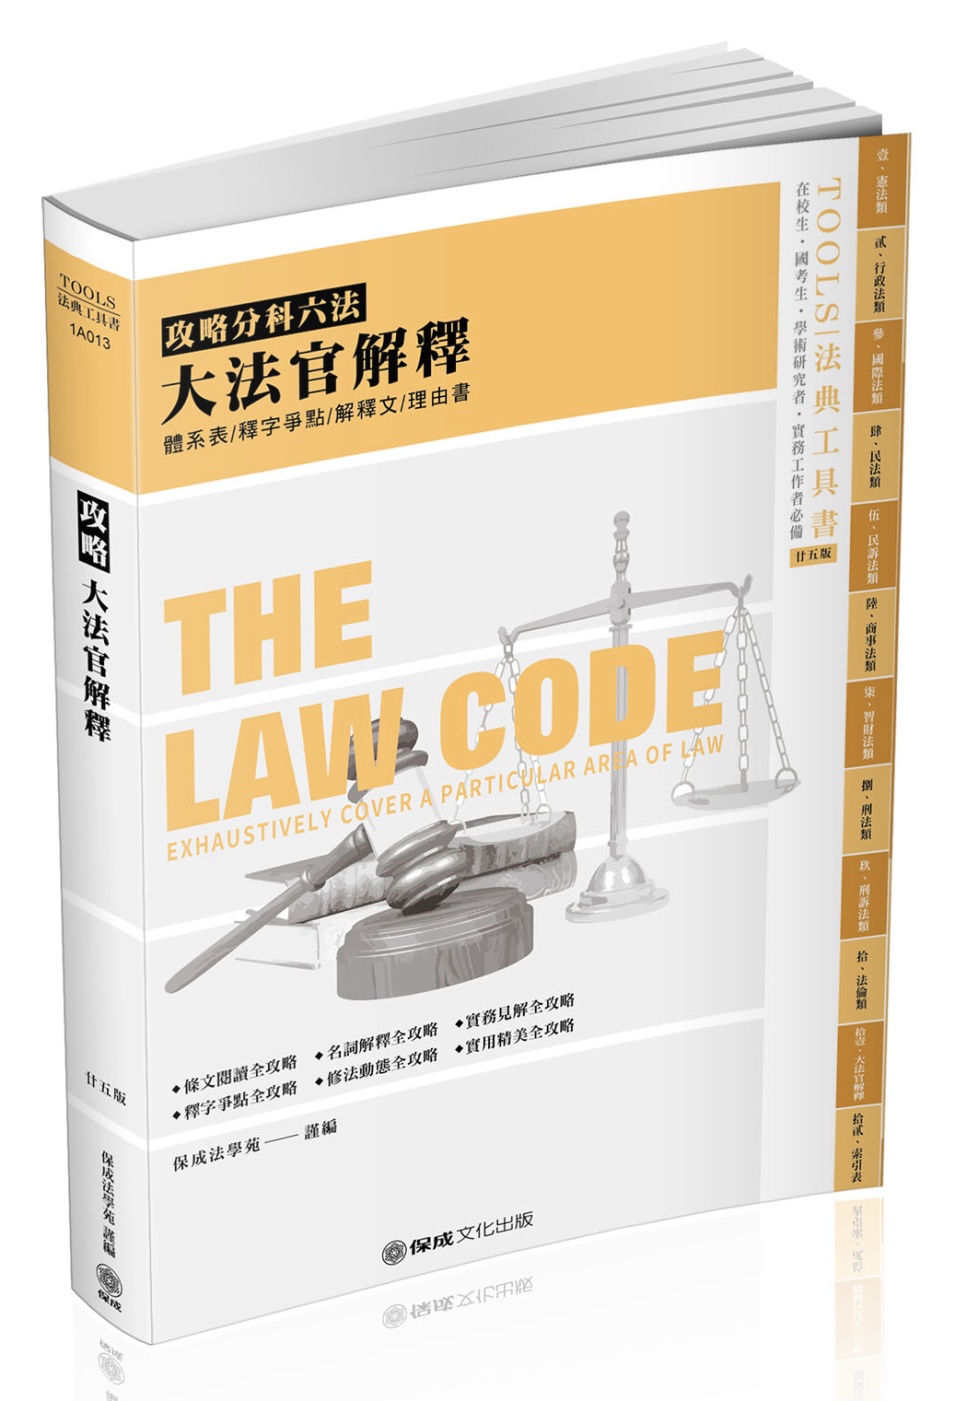 攻略大法官解釋-2021法律法典工具書(保成)(25版)